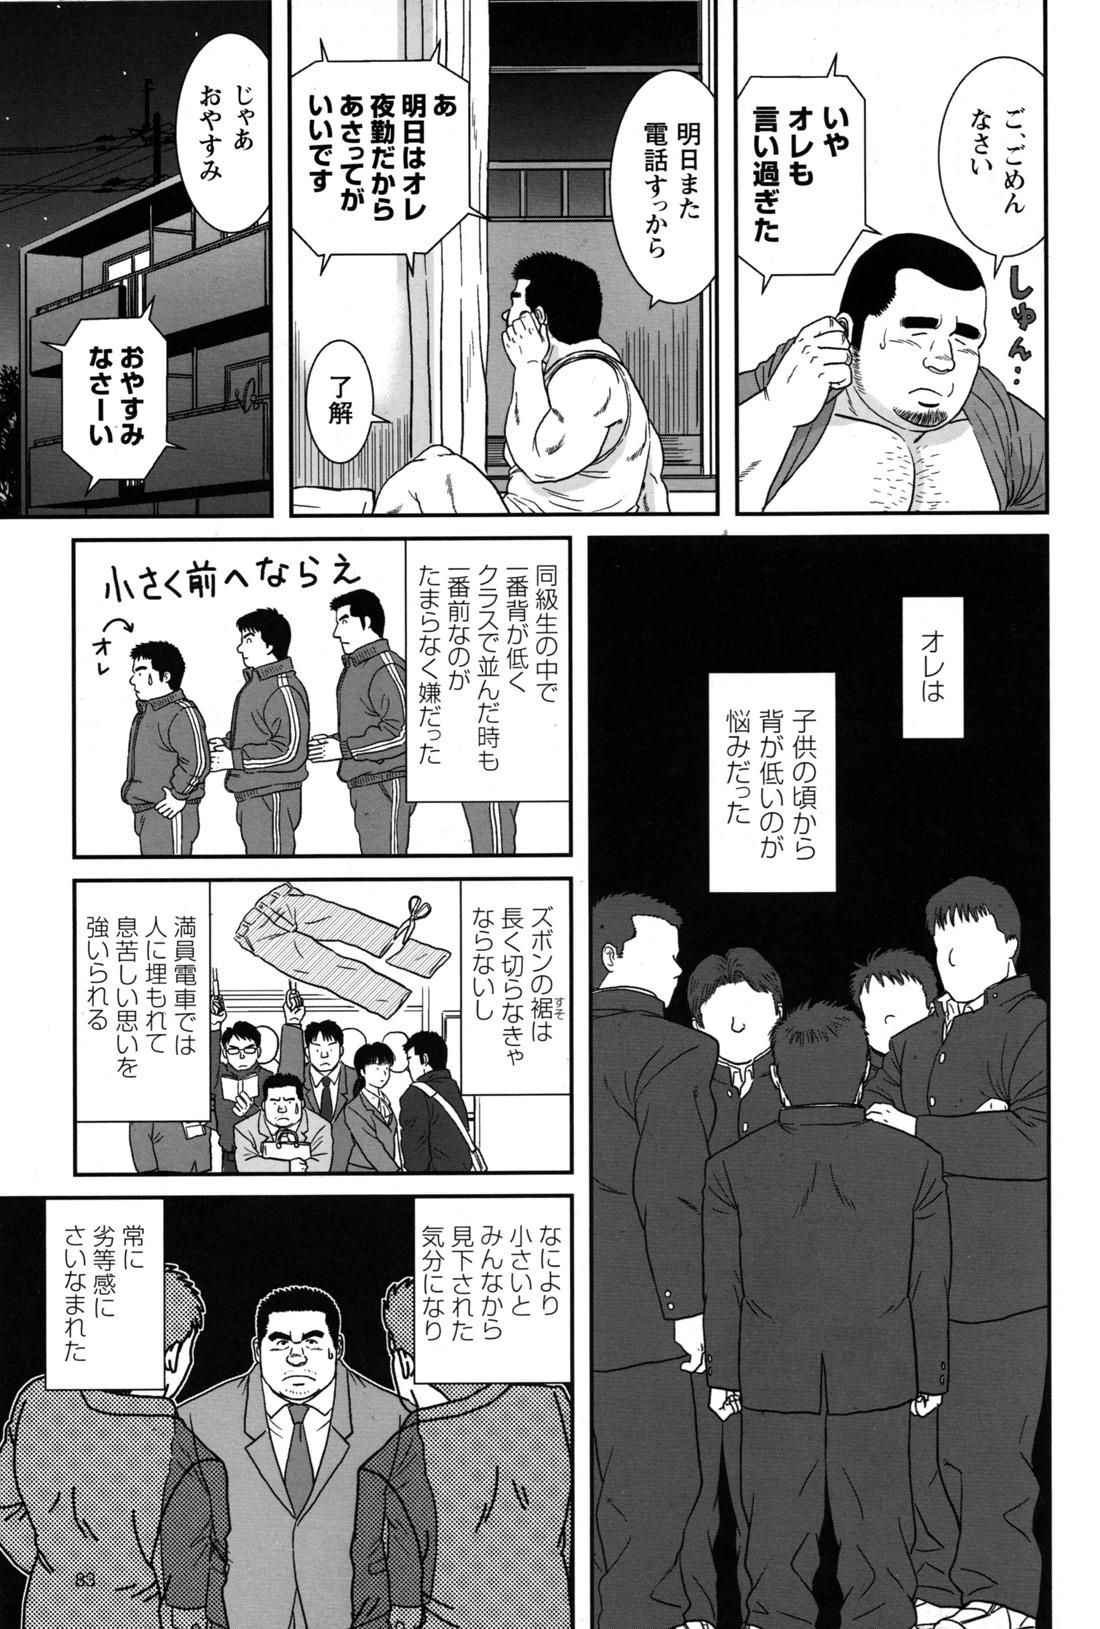 Comic G-men Gaho No.09 Gacchibi Zeme 79